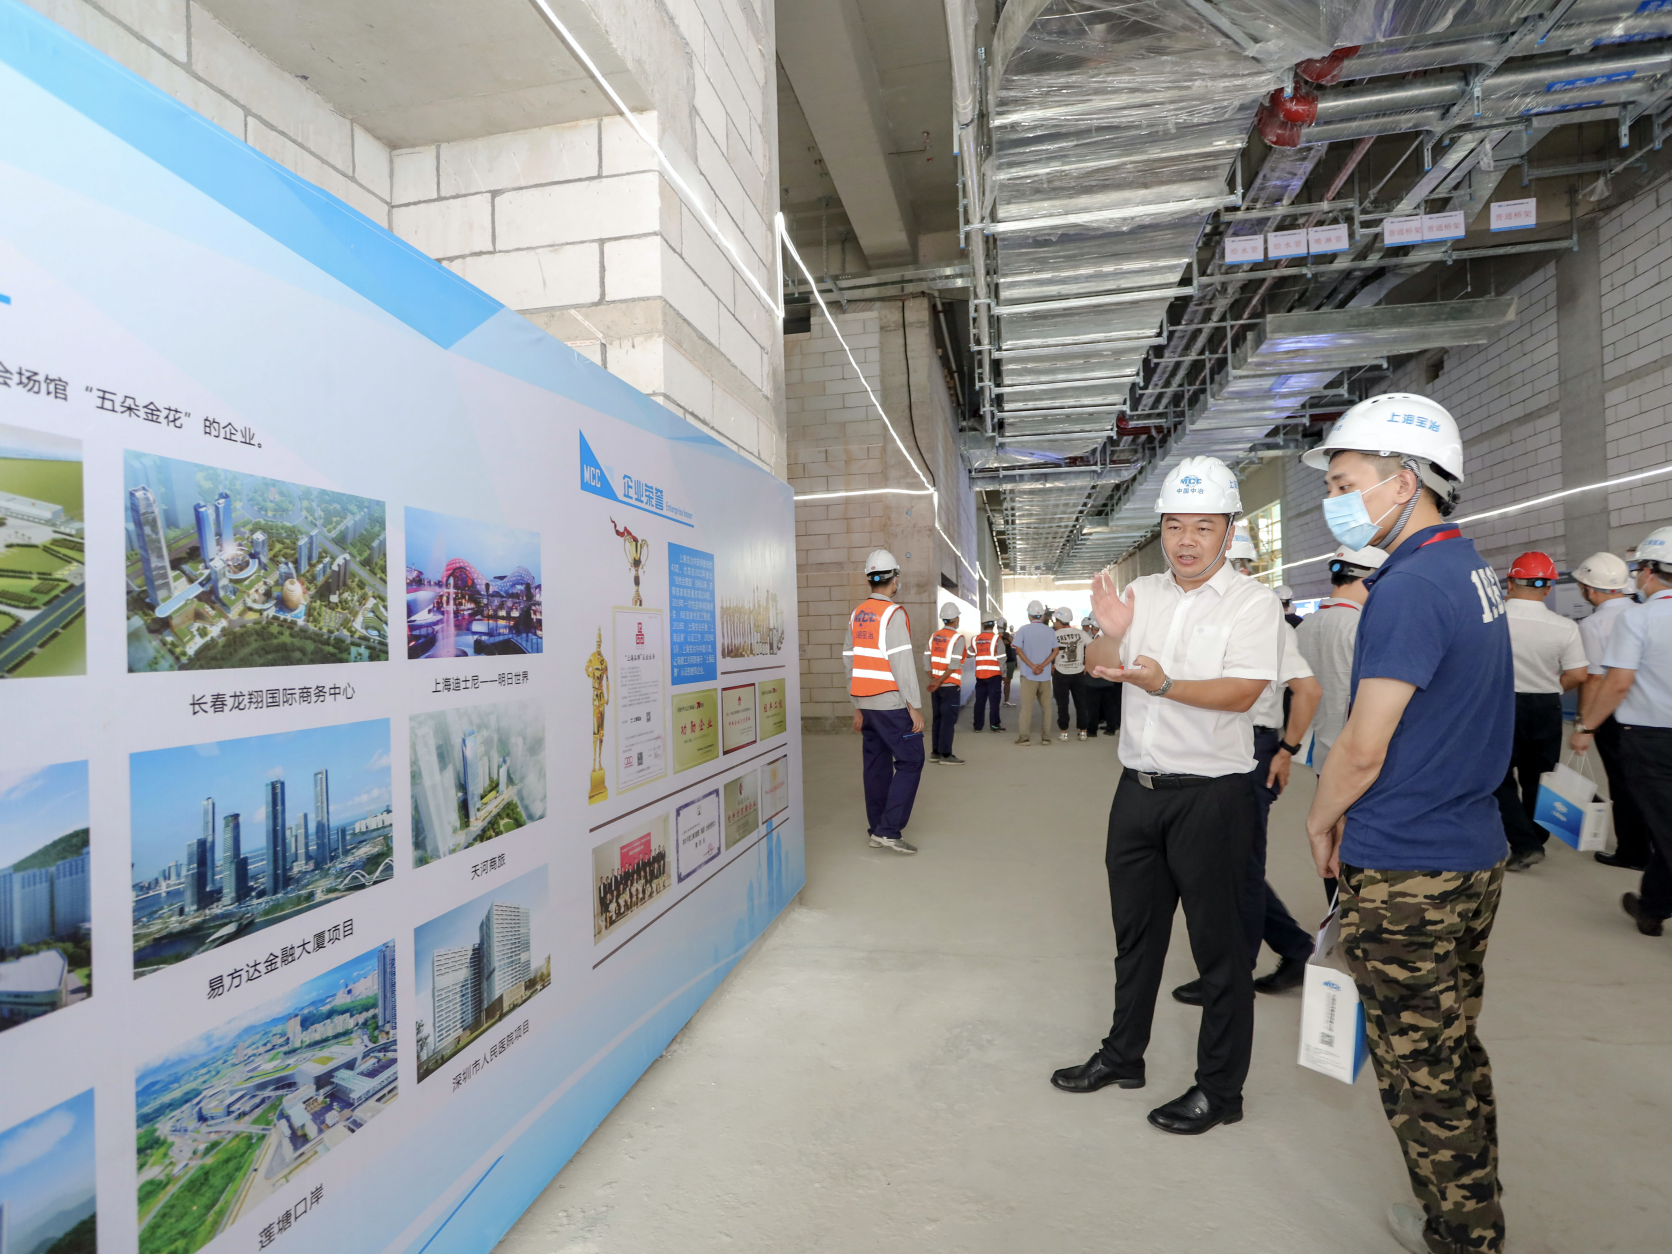 上海宝冶公司开放日在深圳技术大学举办  看“黑科技”BIM如何让学校建设工期缩短59天